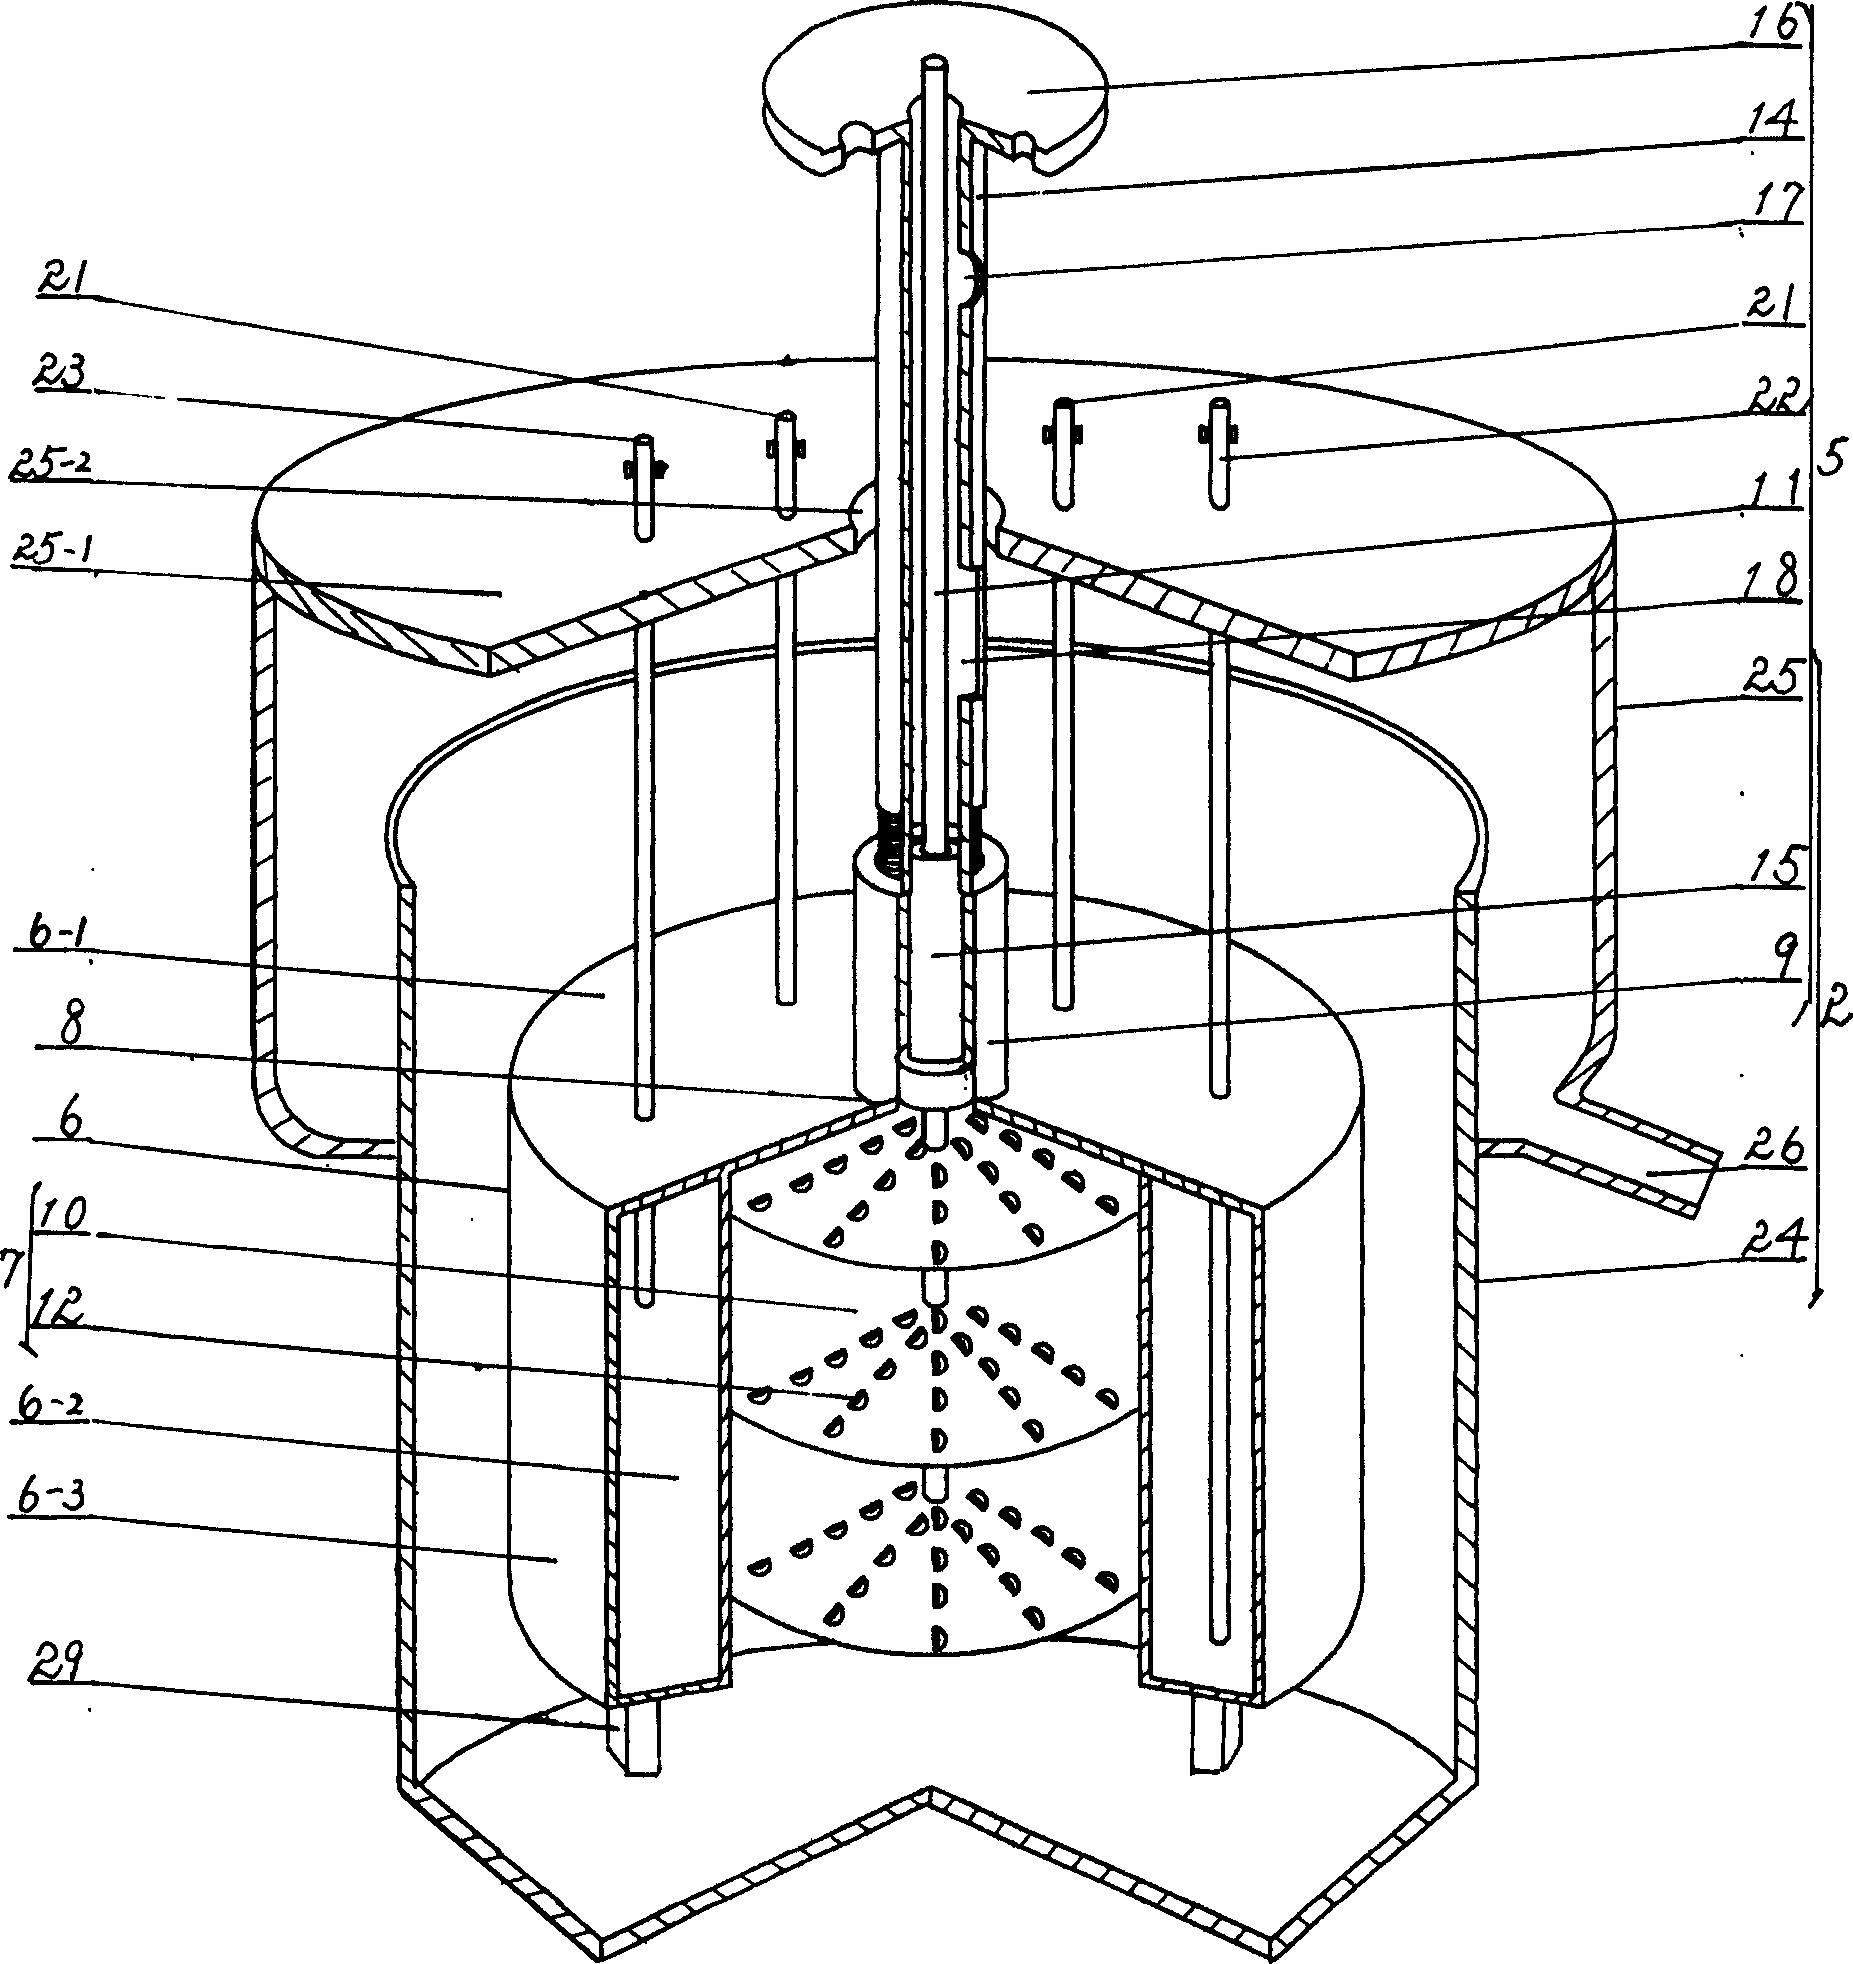 Multipurpose bubble liquid film reactor